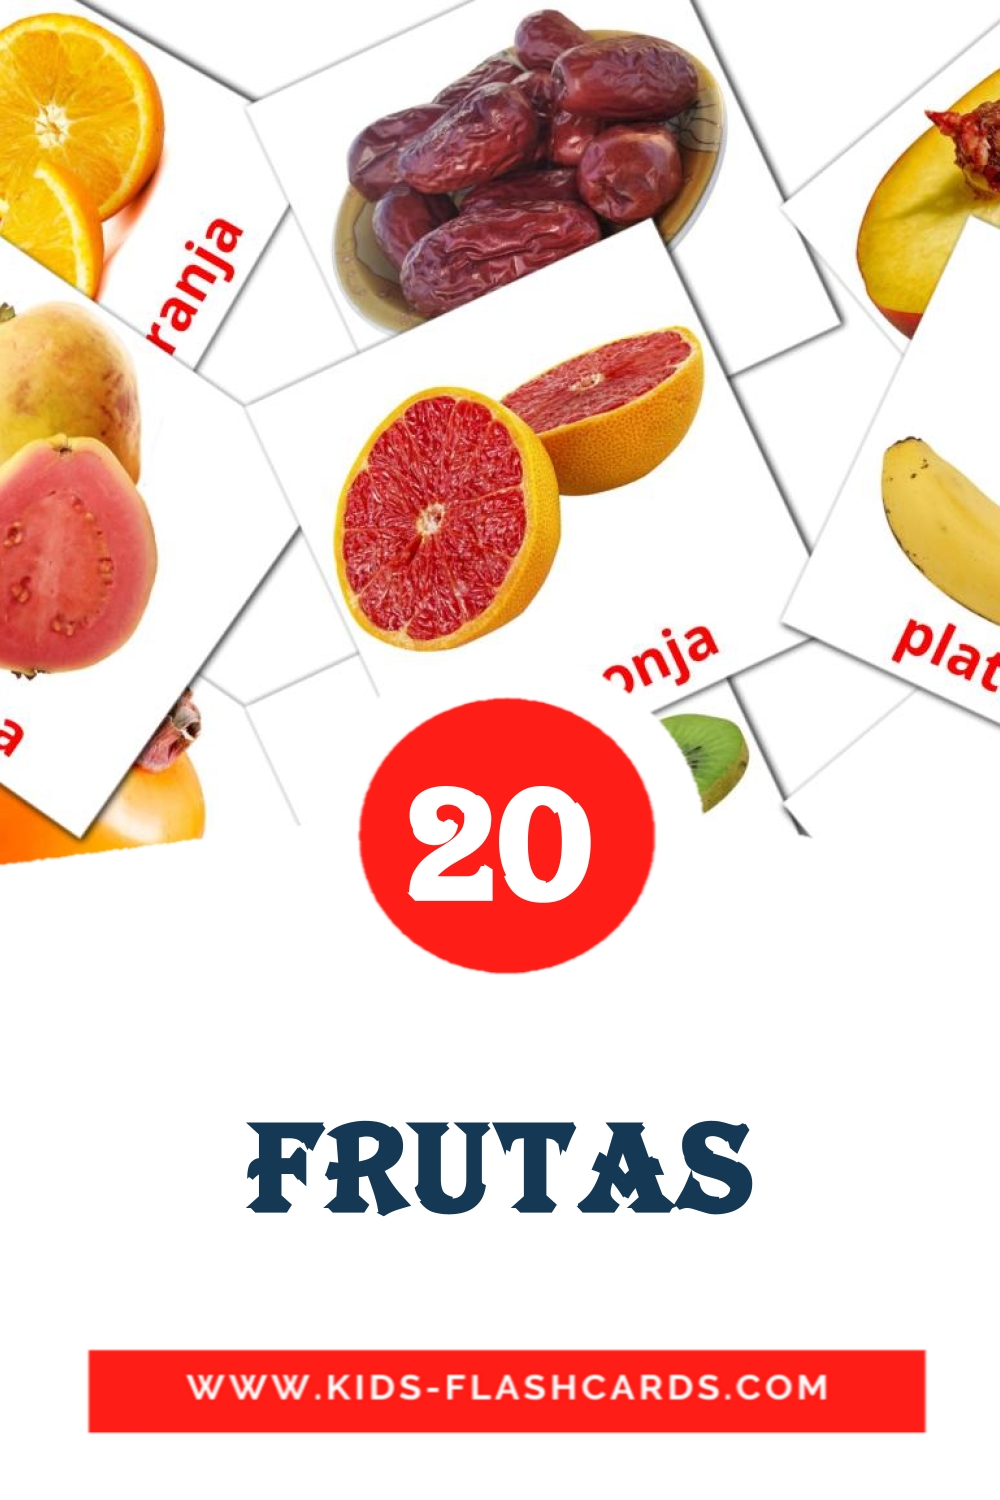 Frutas на баскском для Детского Сада (20 карточек)